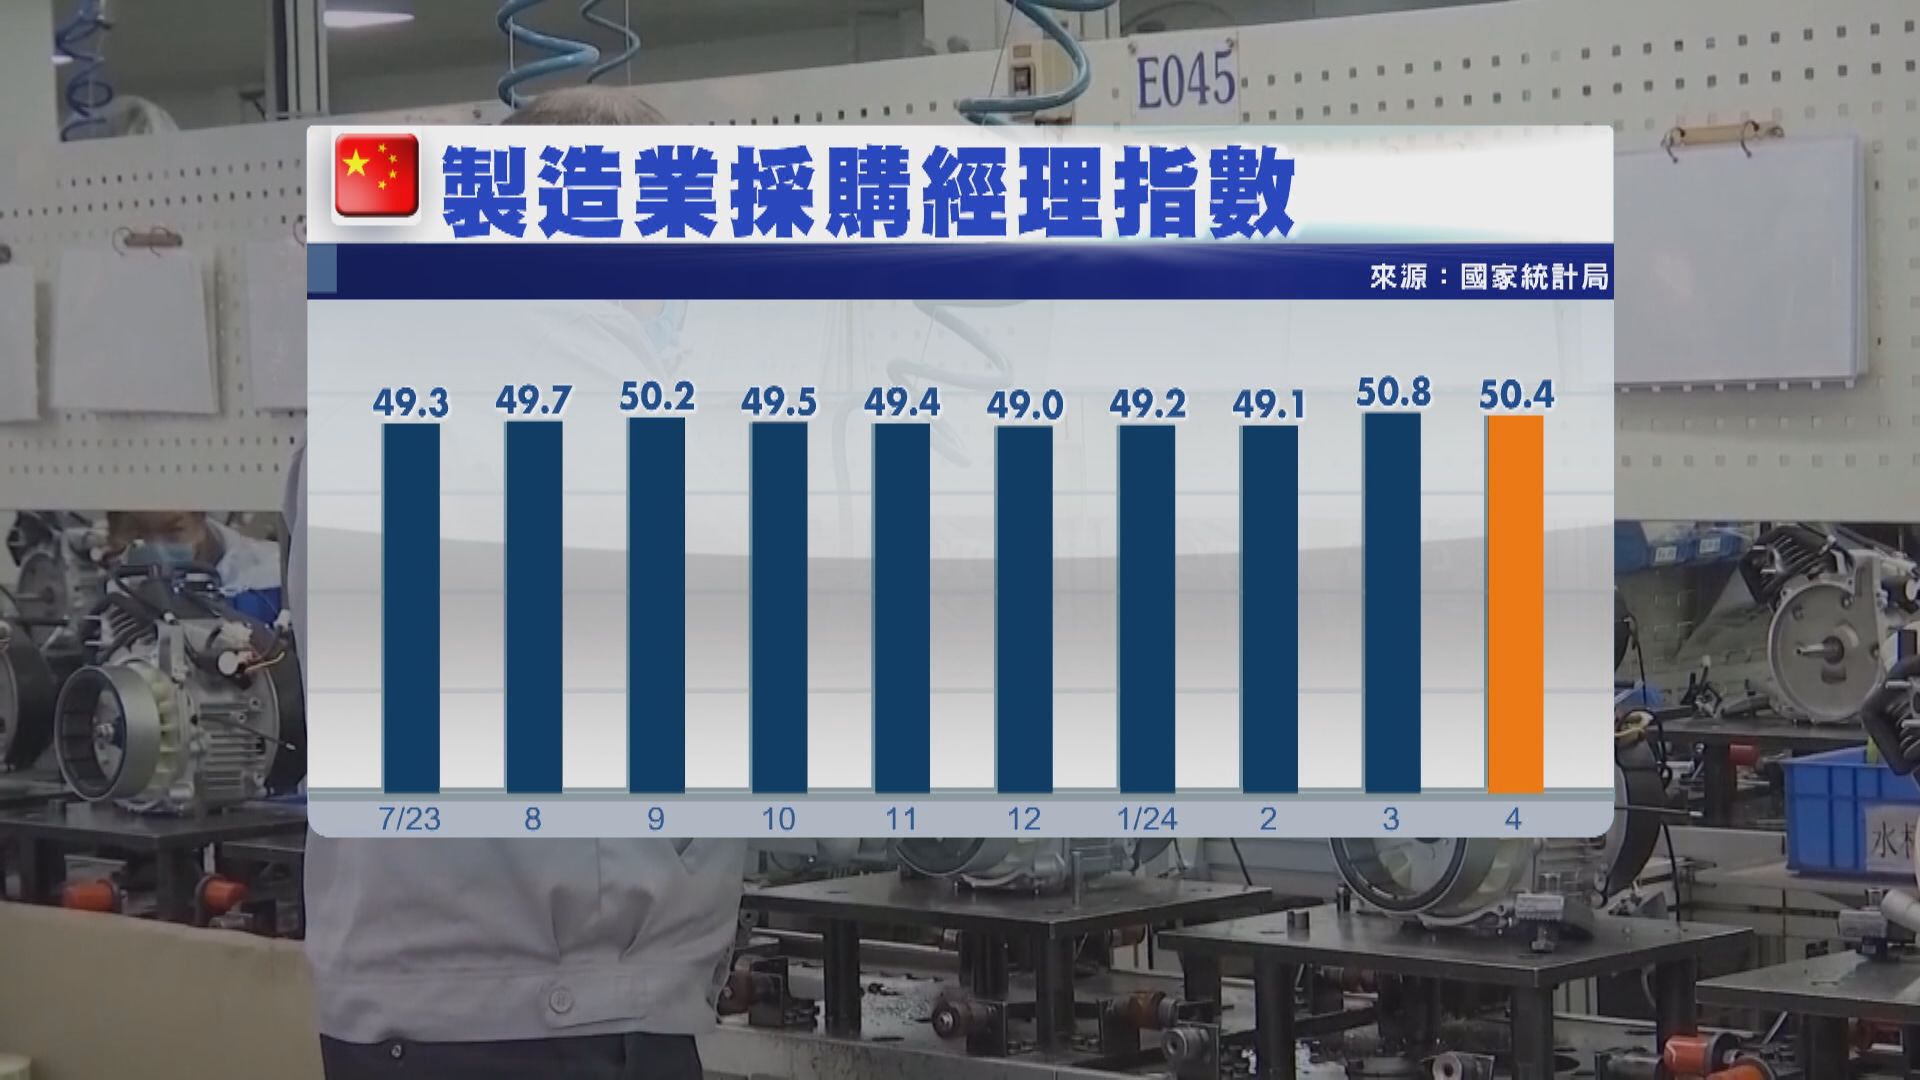 【勝預期】內地4月官方製造業PMI跌至50.4 連續兩個月擴張